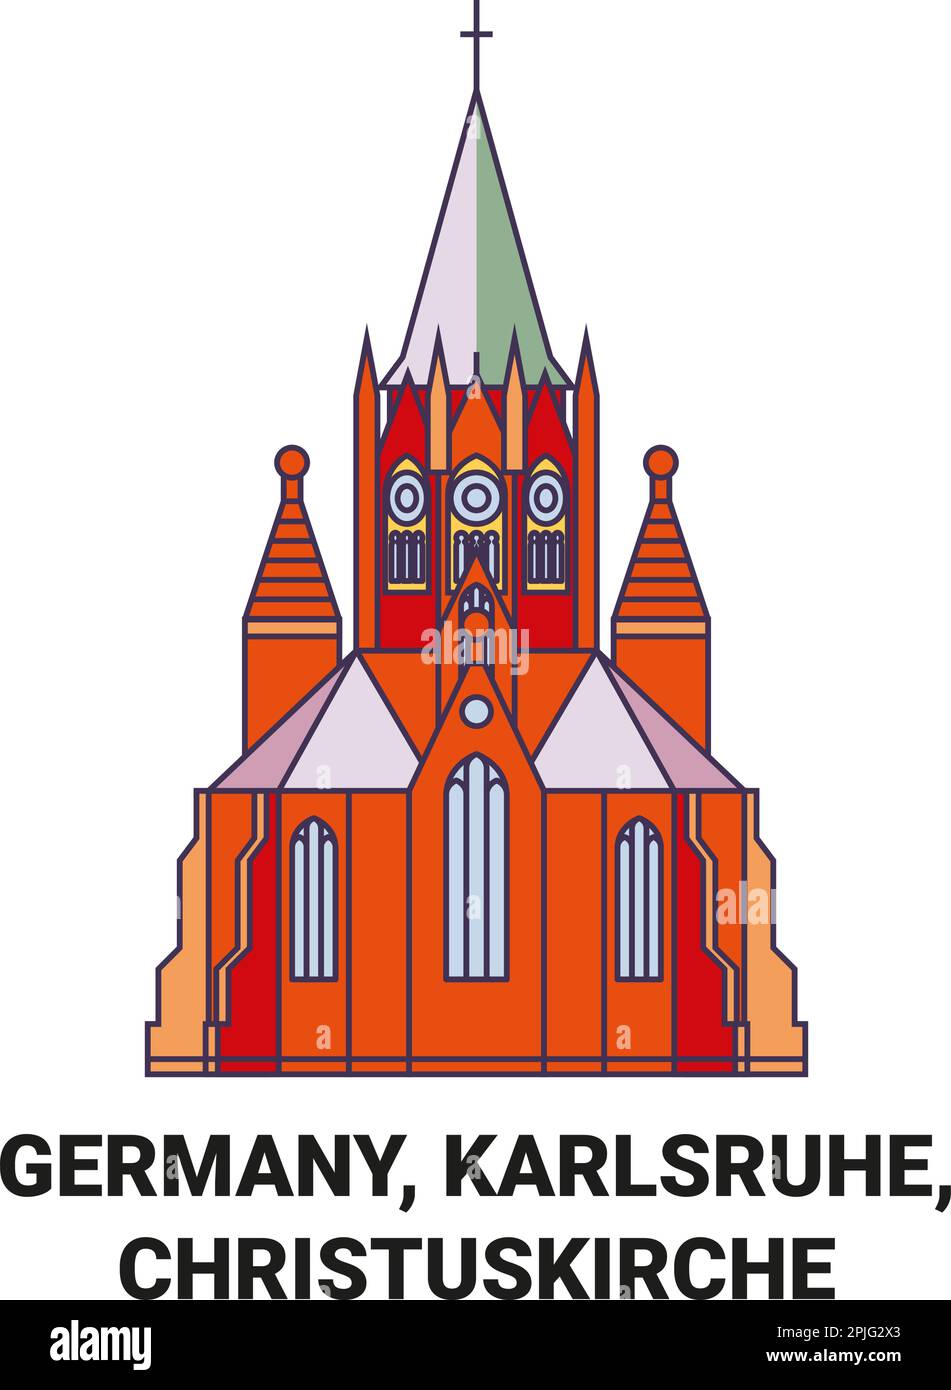 Germany, Karlsruhe, Christuskirche travel landmark vector illustration Stock Vector